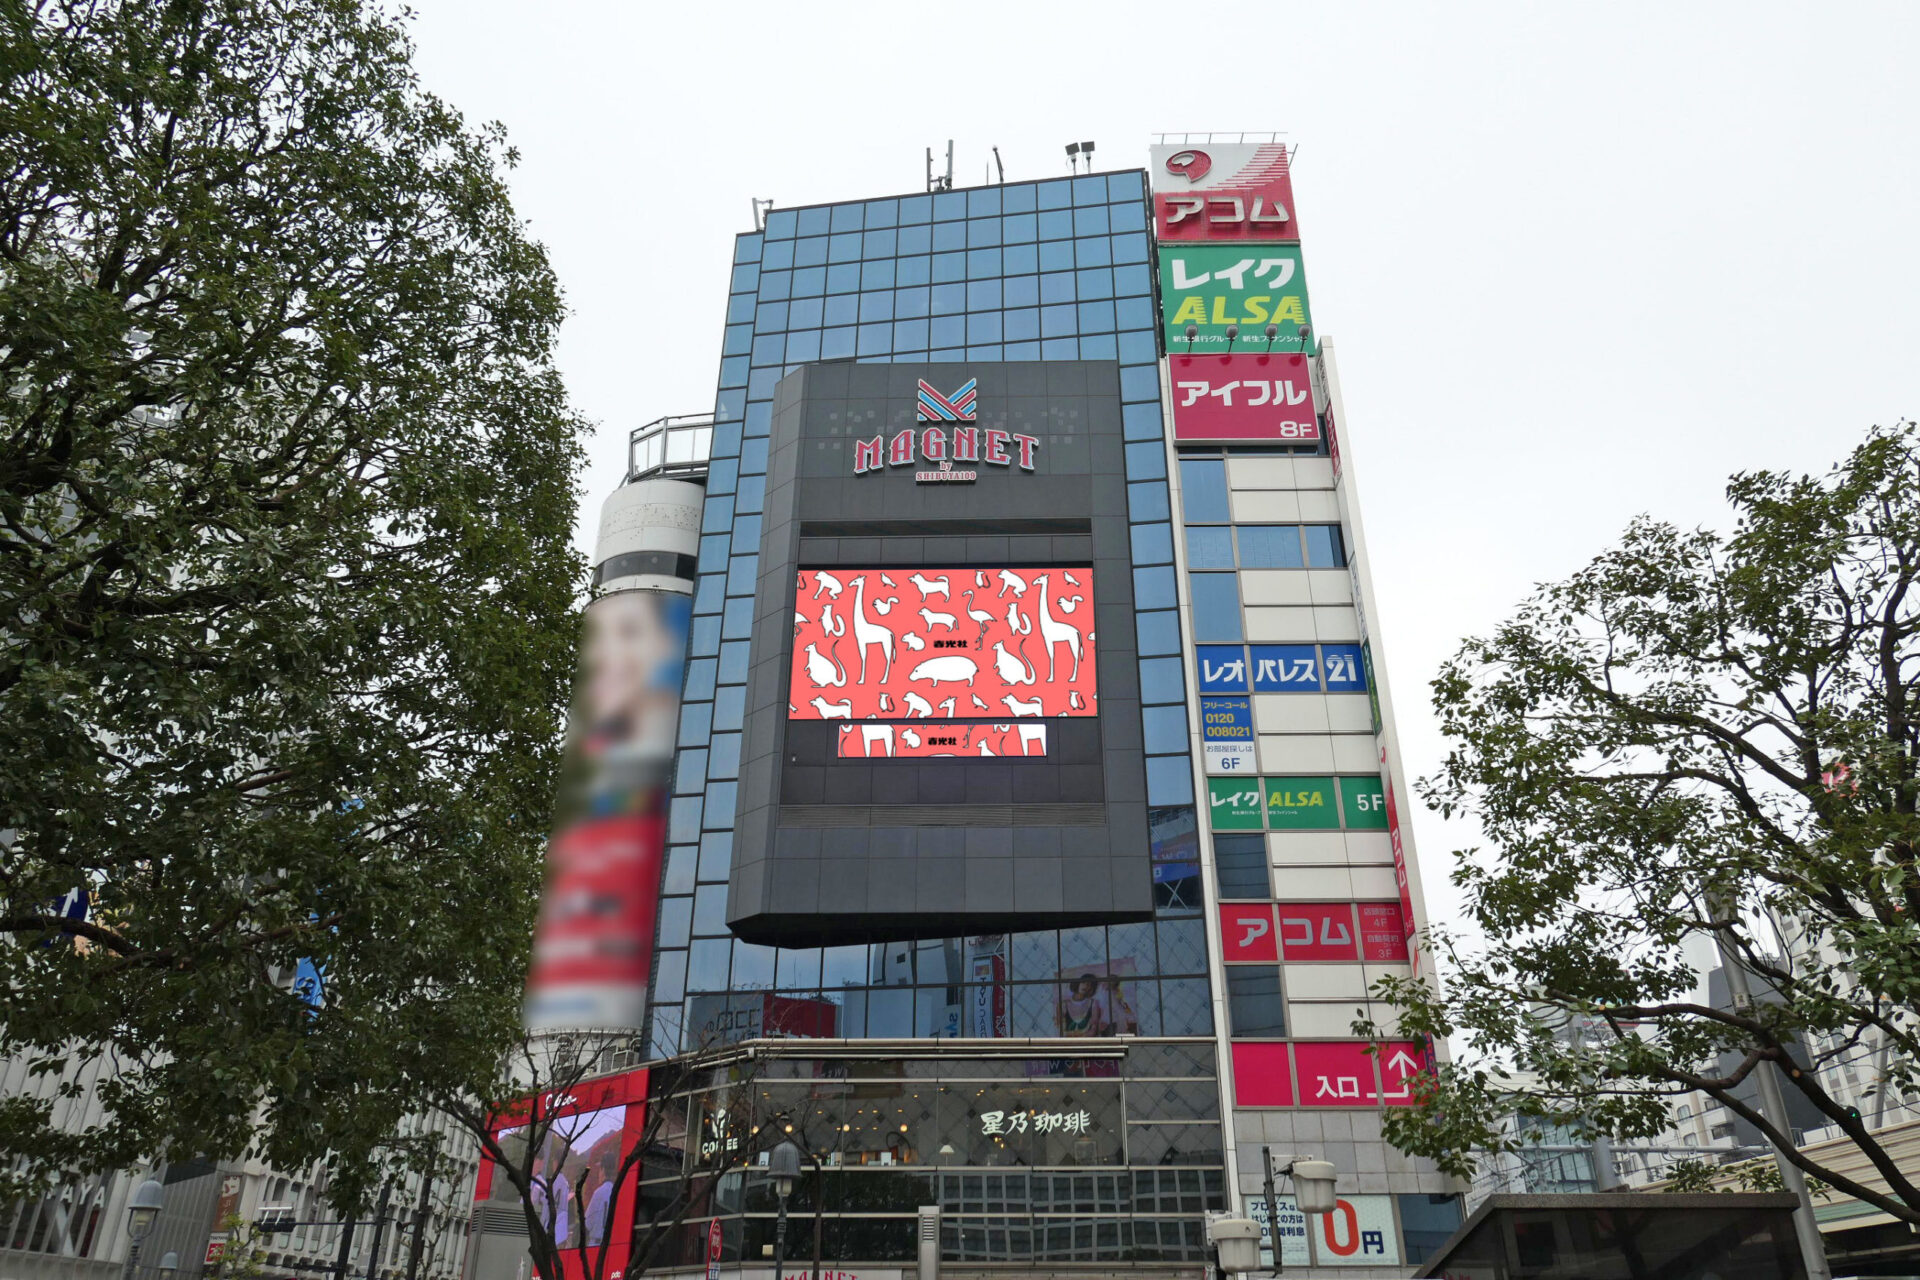 渋谷駅前109MEN'Sビル壁面に設置されている横型の大型デジタルサイネージ